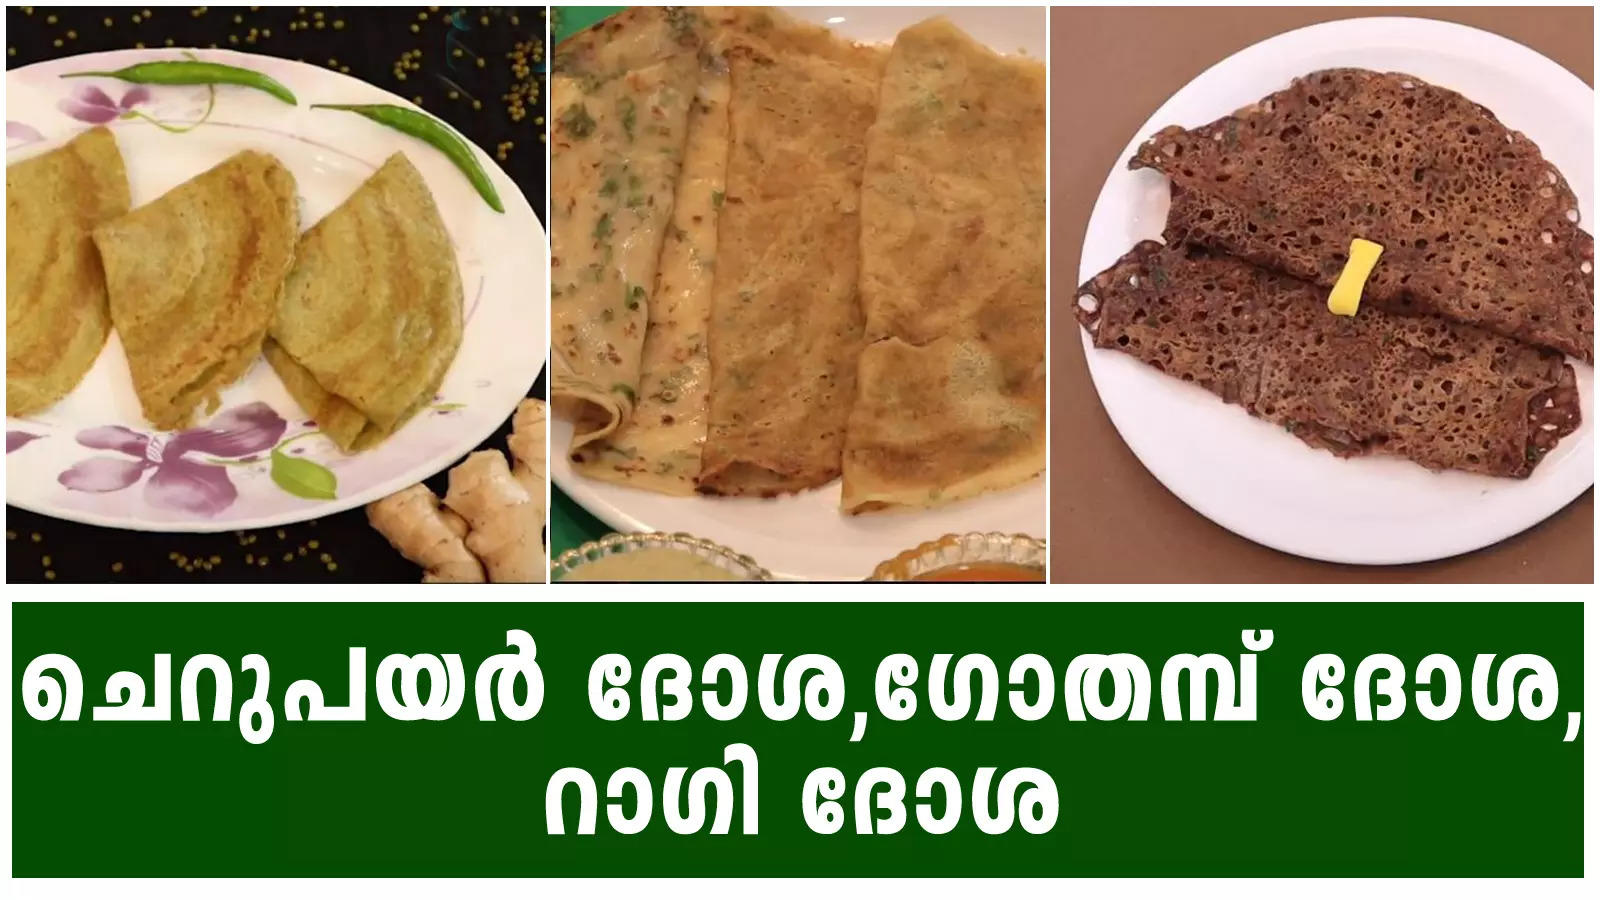 തരിപോള|Steamed Cake Malayalam|Semolina Cake Recipe|Rava Cake Recipe  Malayalam|5 Minute Recipes - YouTube